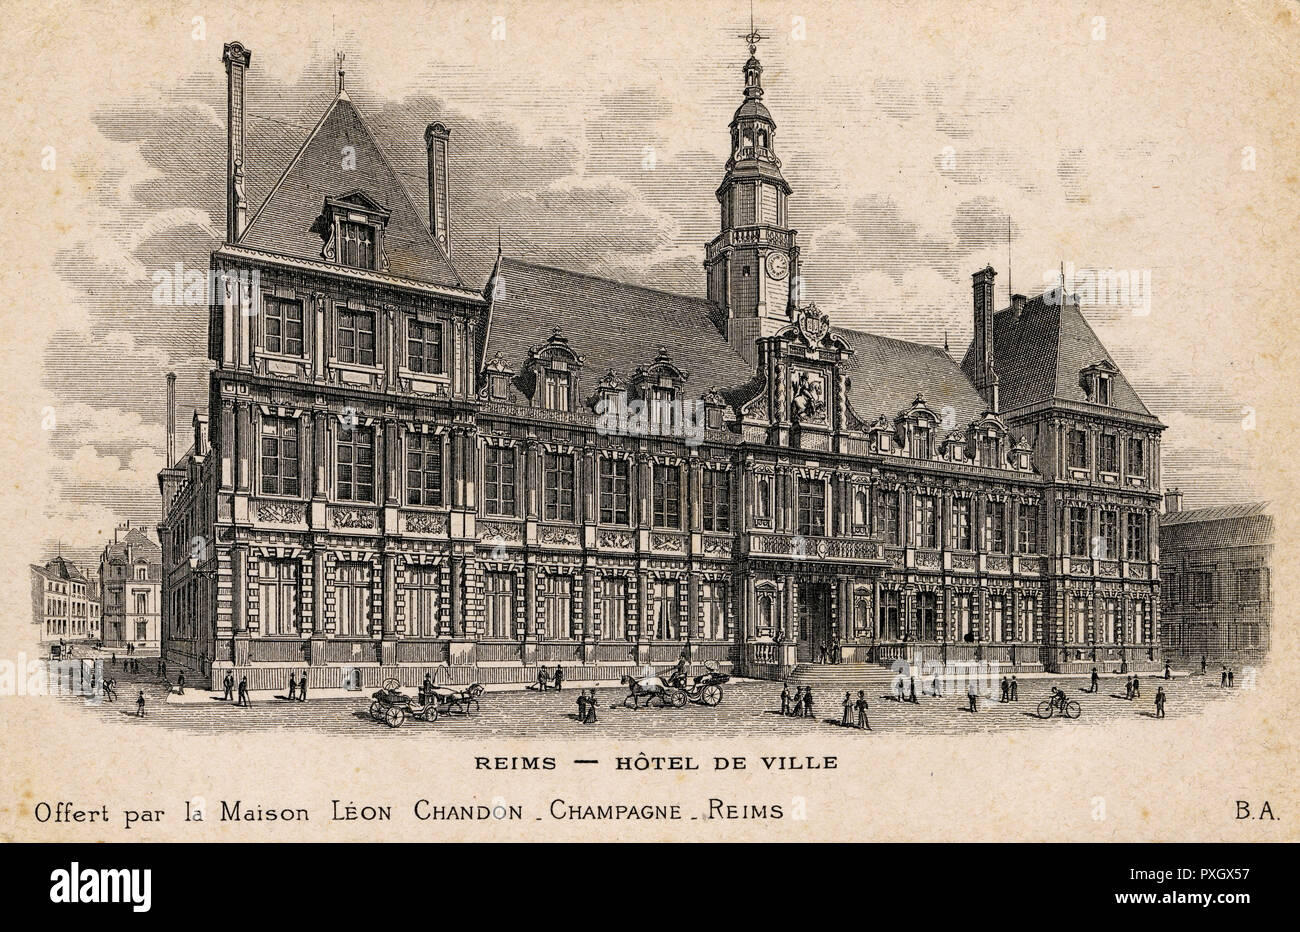 Hôtel de ville - Reims, France Banque D'Images